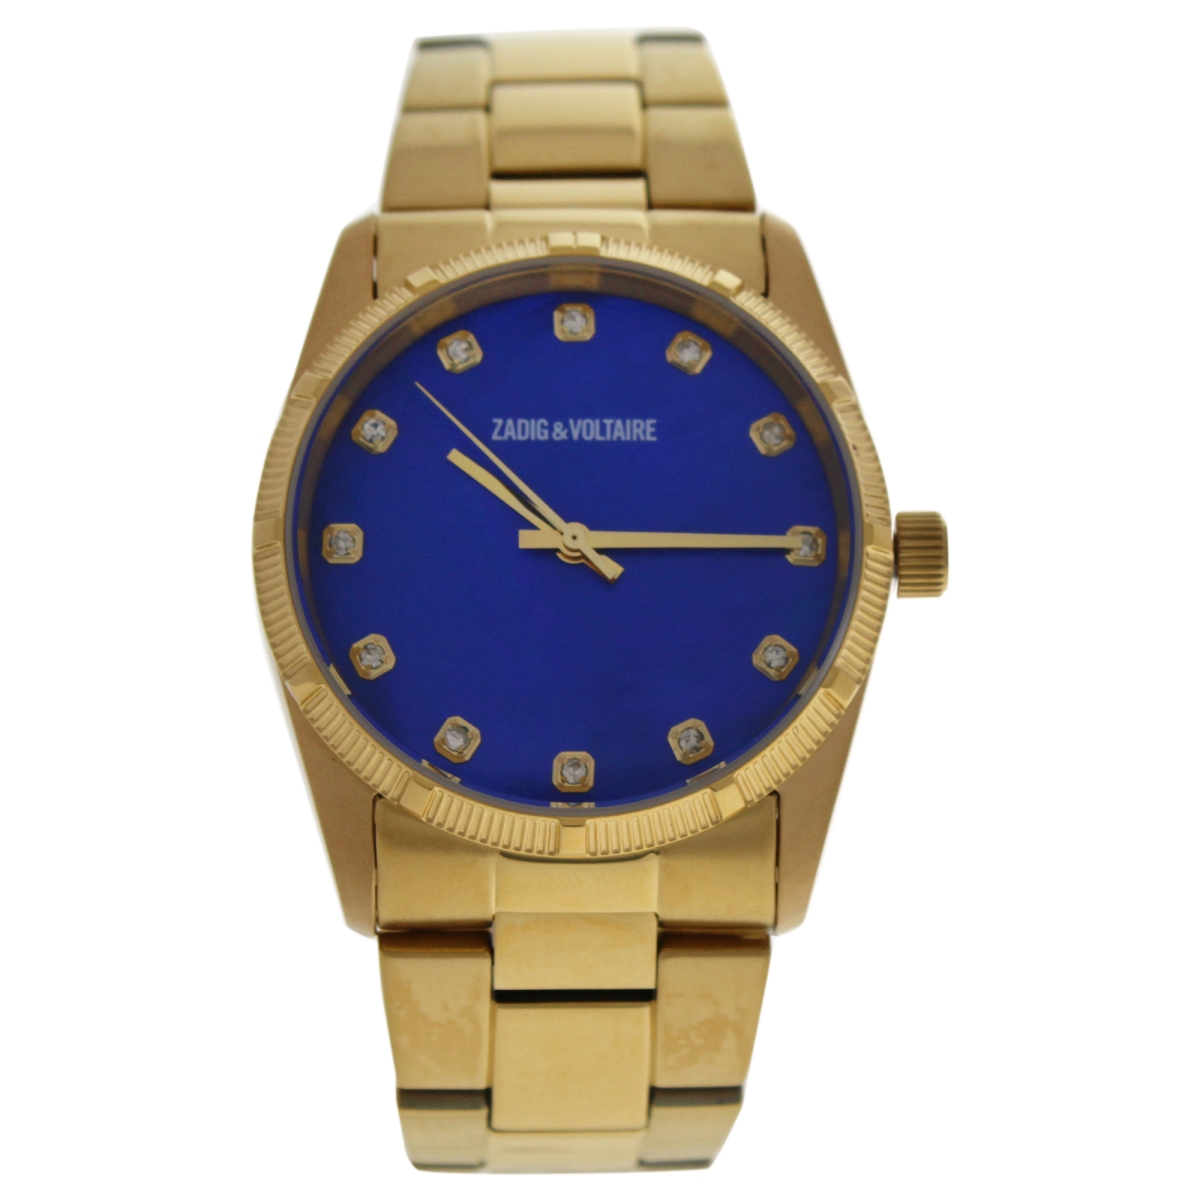 U-wat-1059 Zvf220 Gold Stainless Steel Bracelet Watch For Unisex - Blue Dial